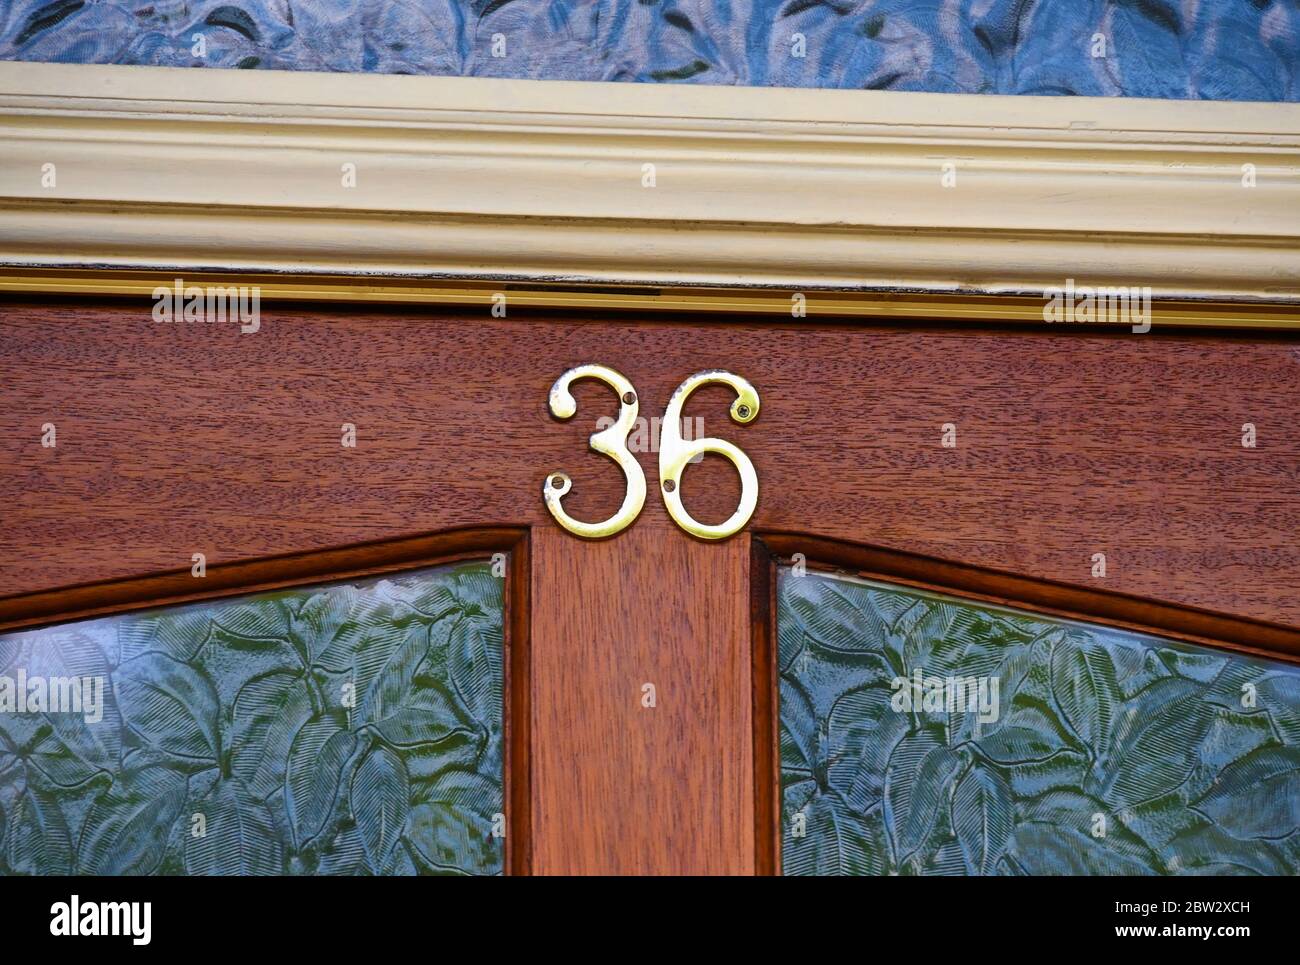 House Number 36. Glebe Road. Kendal, Cumbria, England, United Kingdom, Europe. Stock Photo